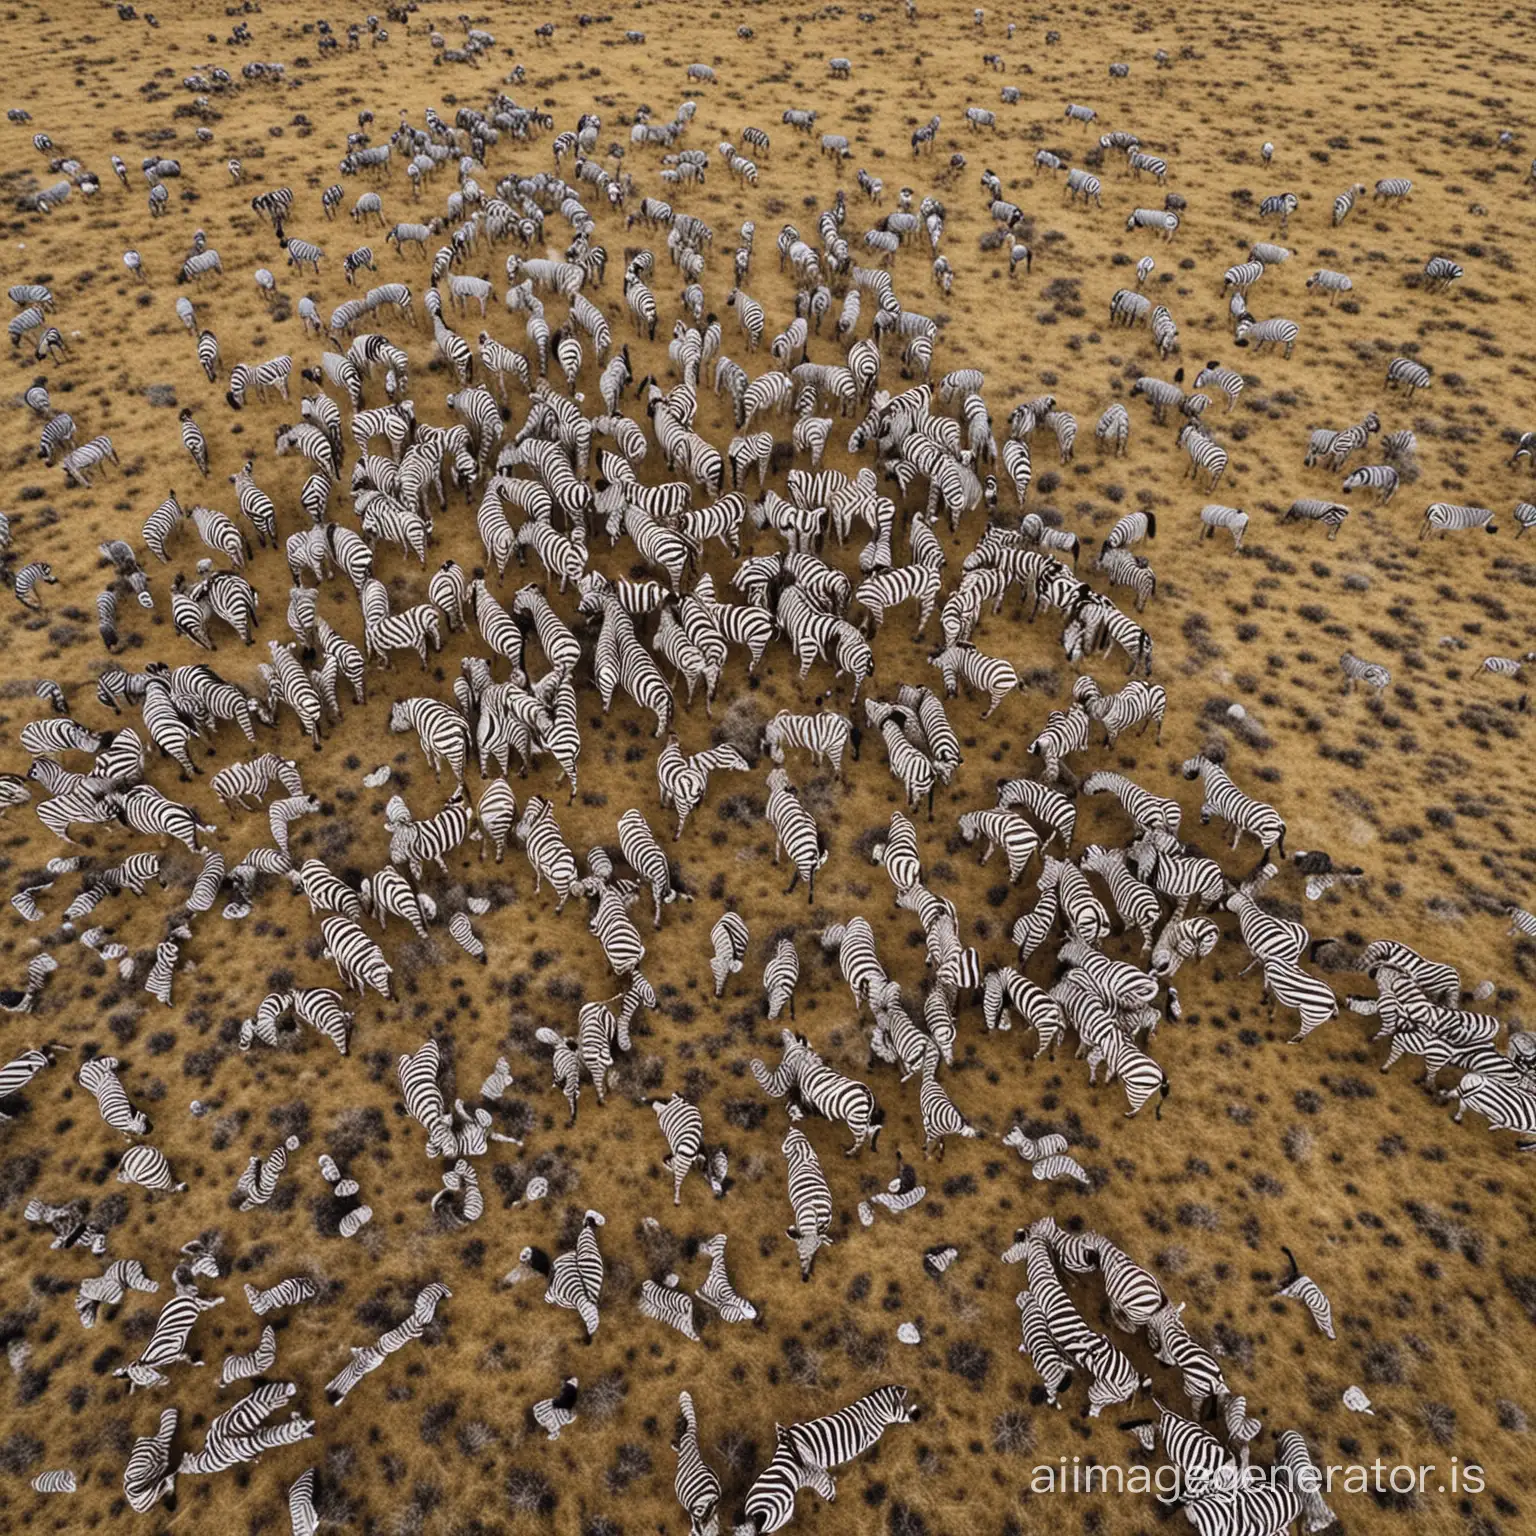 une photo prise depuis un drone d'un troupeau de zèbres dans la savane